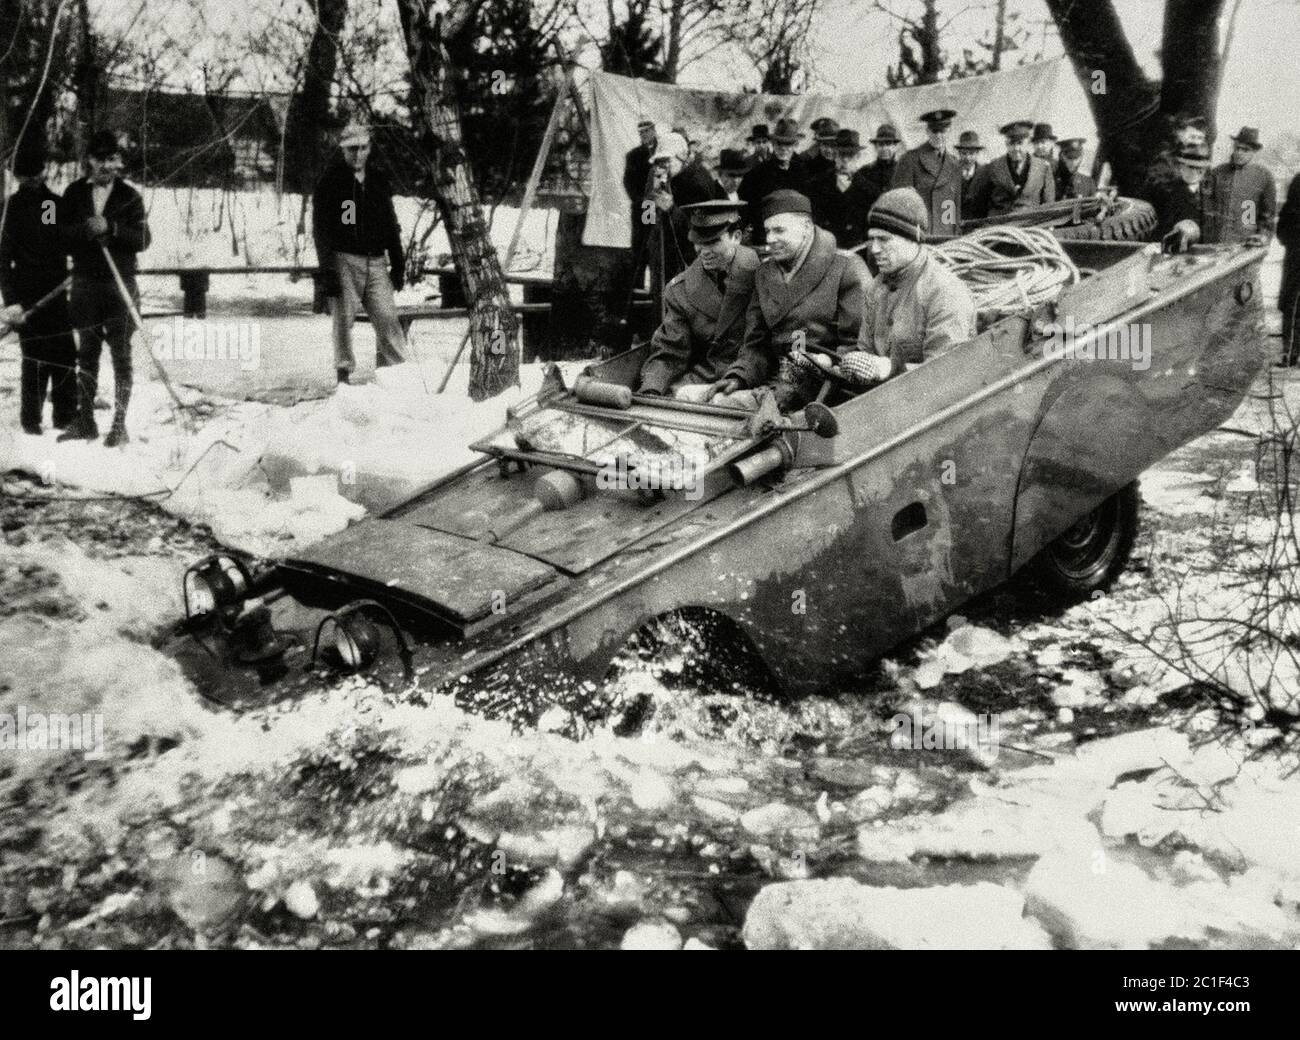 1943, März 23. Eines der neuen Produkte - ein amphibischer Jeep für die US-Armee produziert, rutscht in eisigen Wasser für Tests, in der Gegend von Detroit Stockfoto